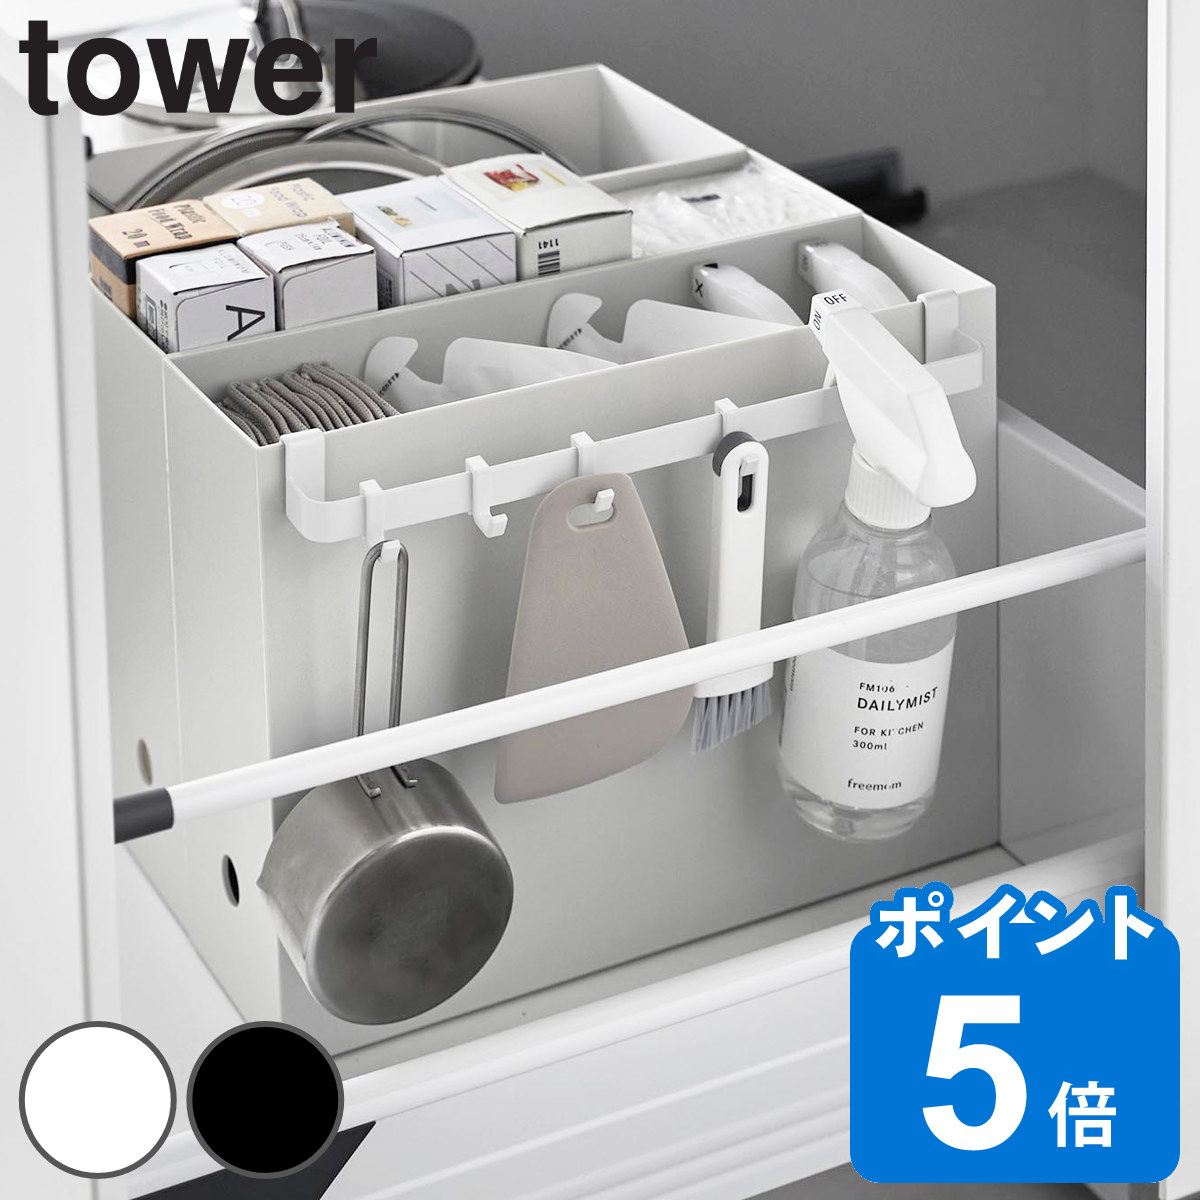 山崎実業 tower ファイルケース取り付け引っ掛け収納バー タワー